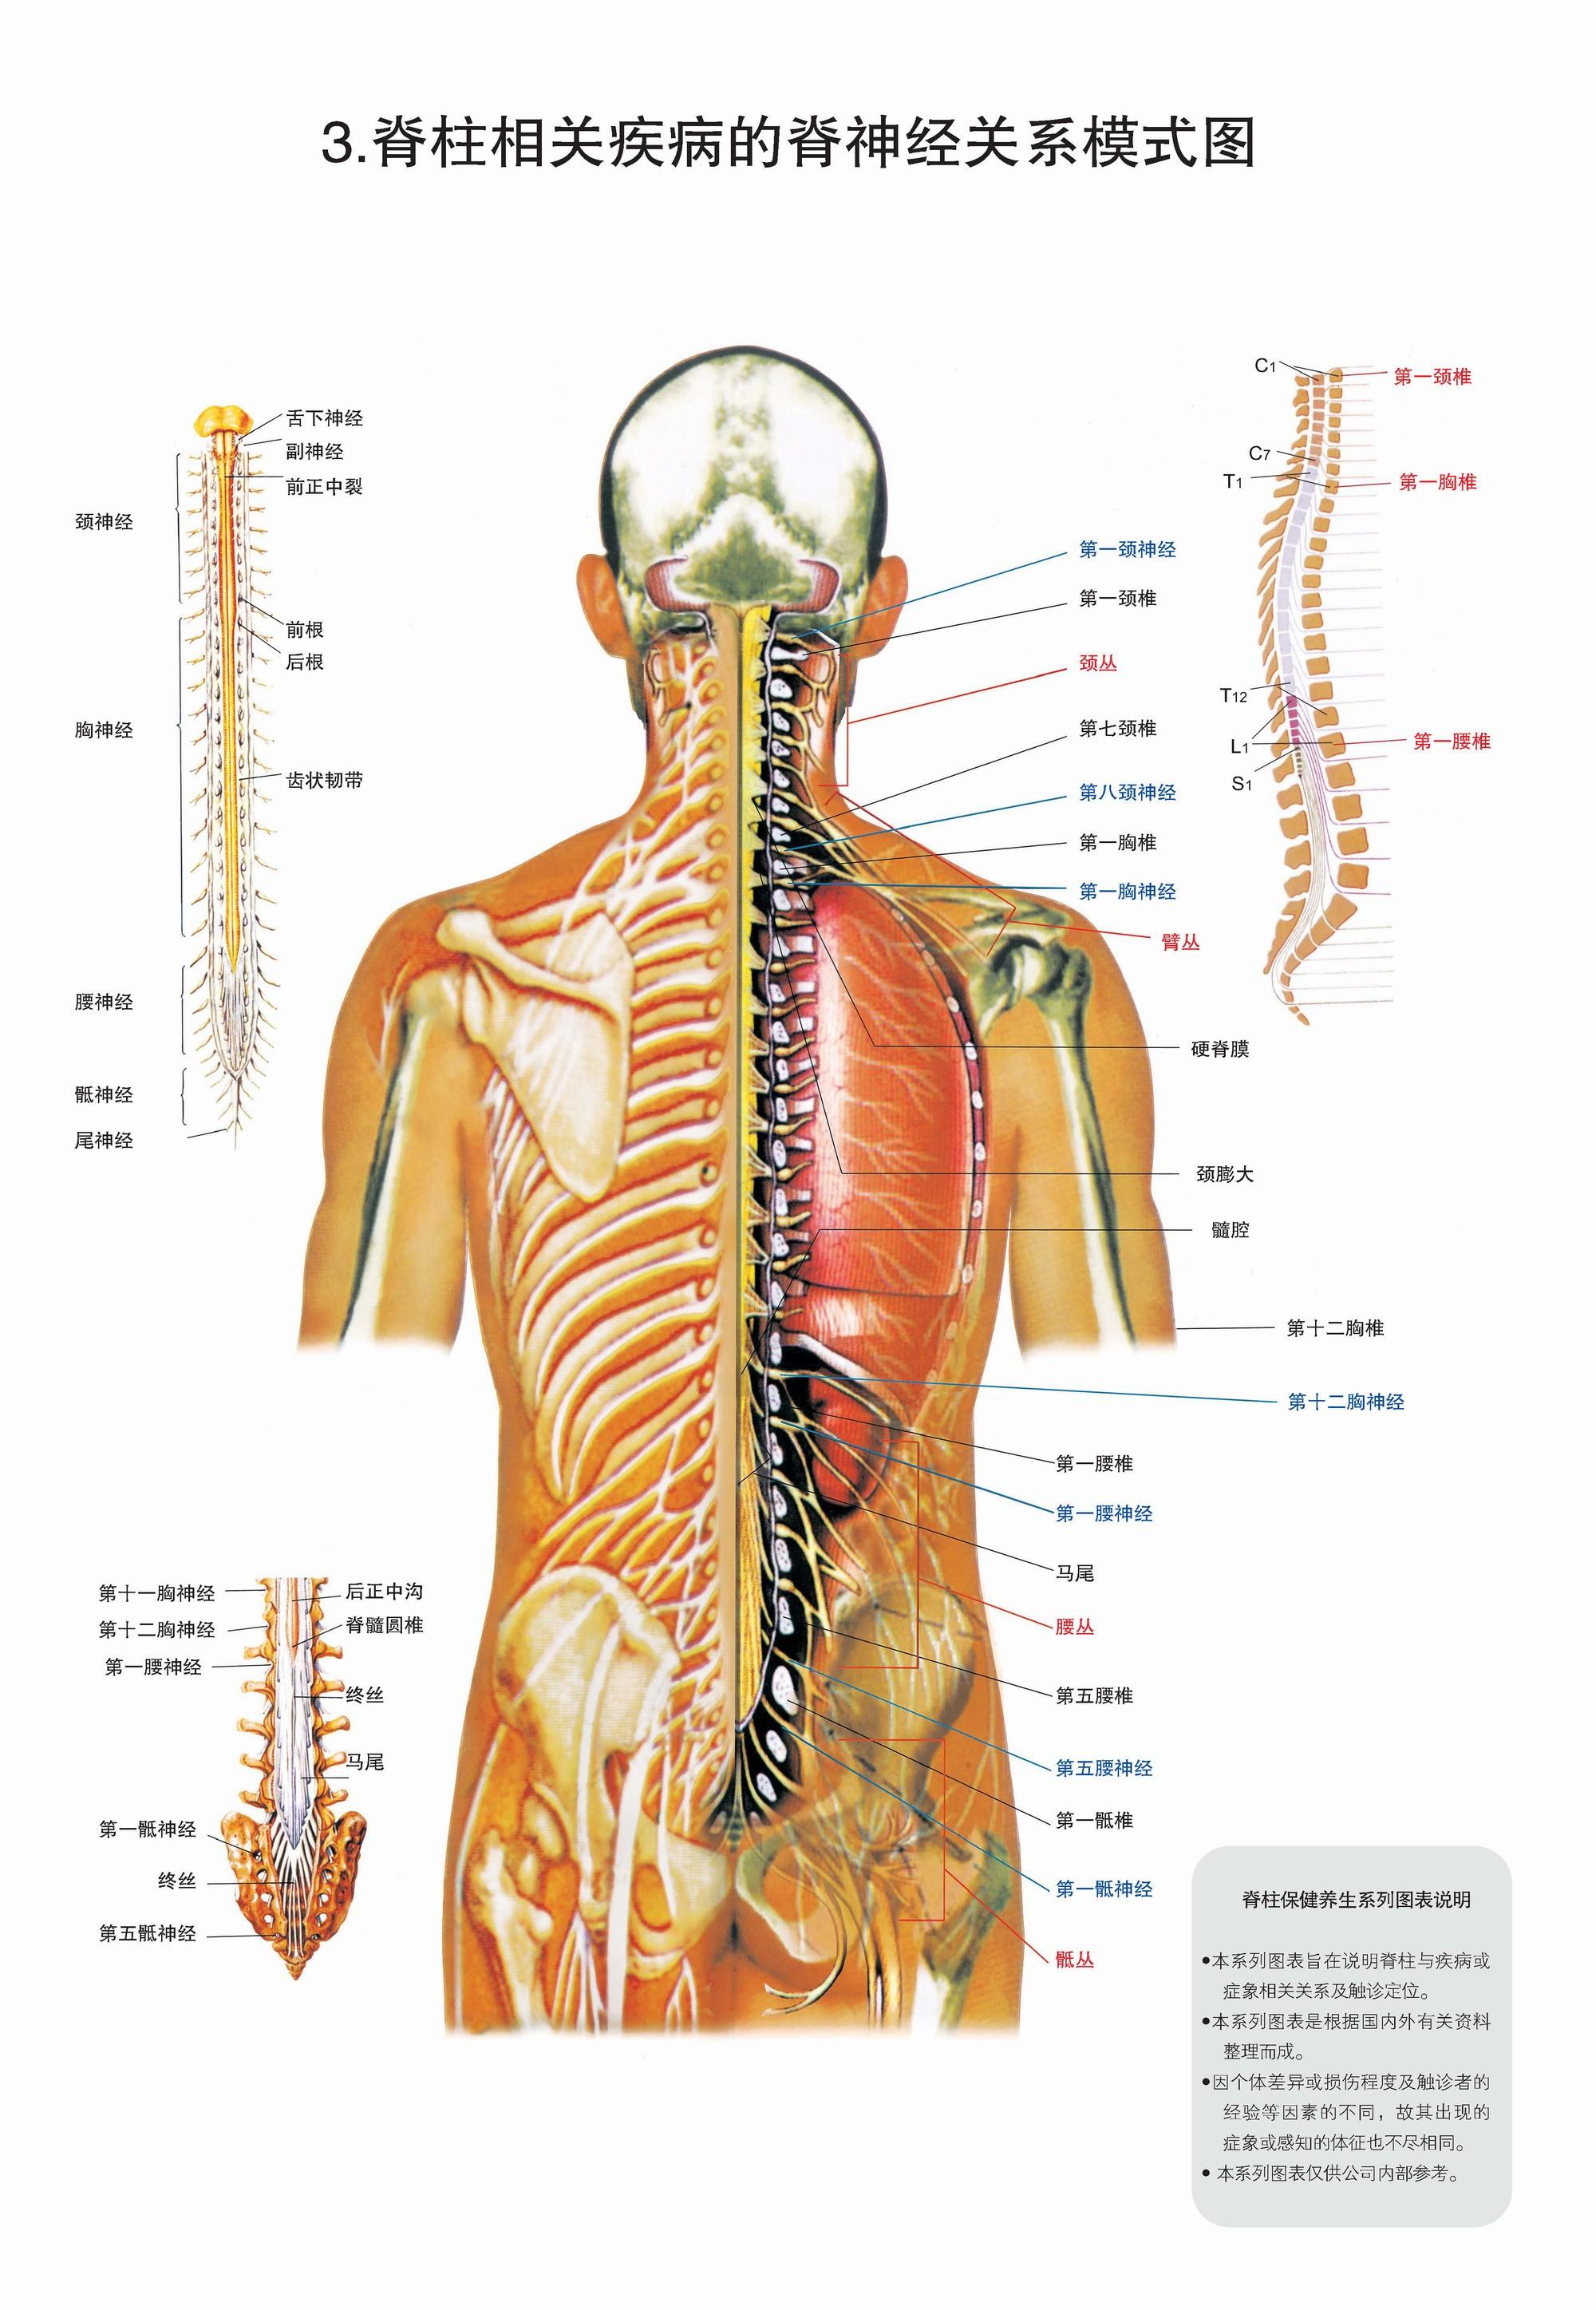 脊柱节段与人体部位的对应图大全,你想要的都在这里